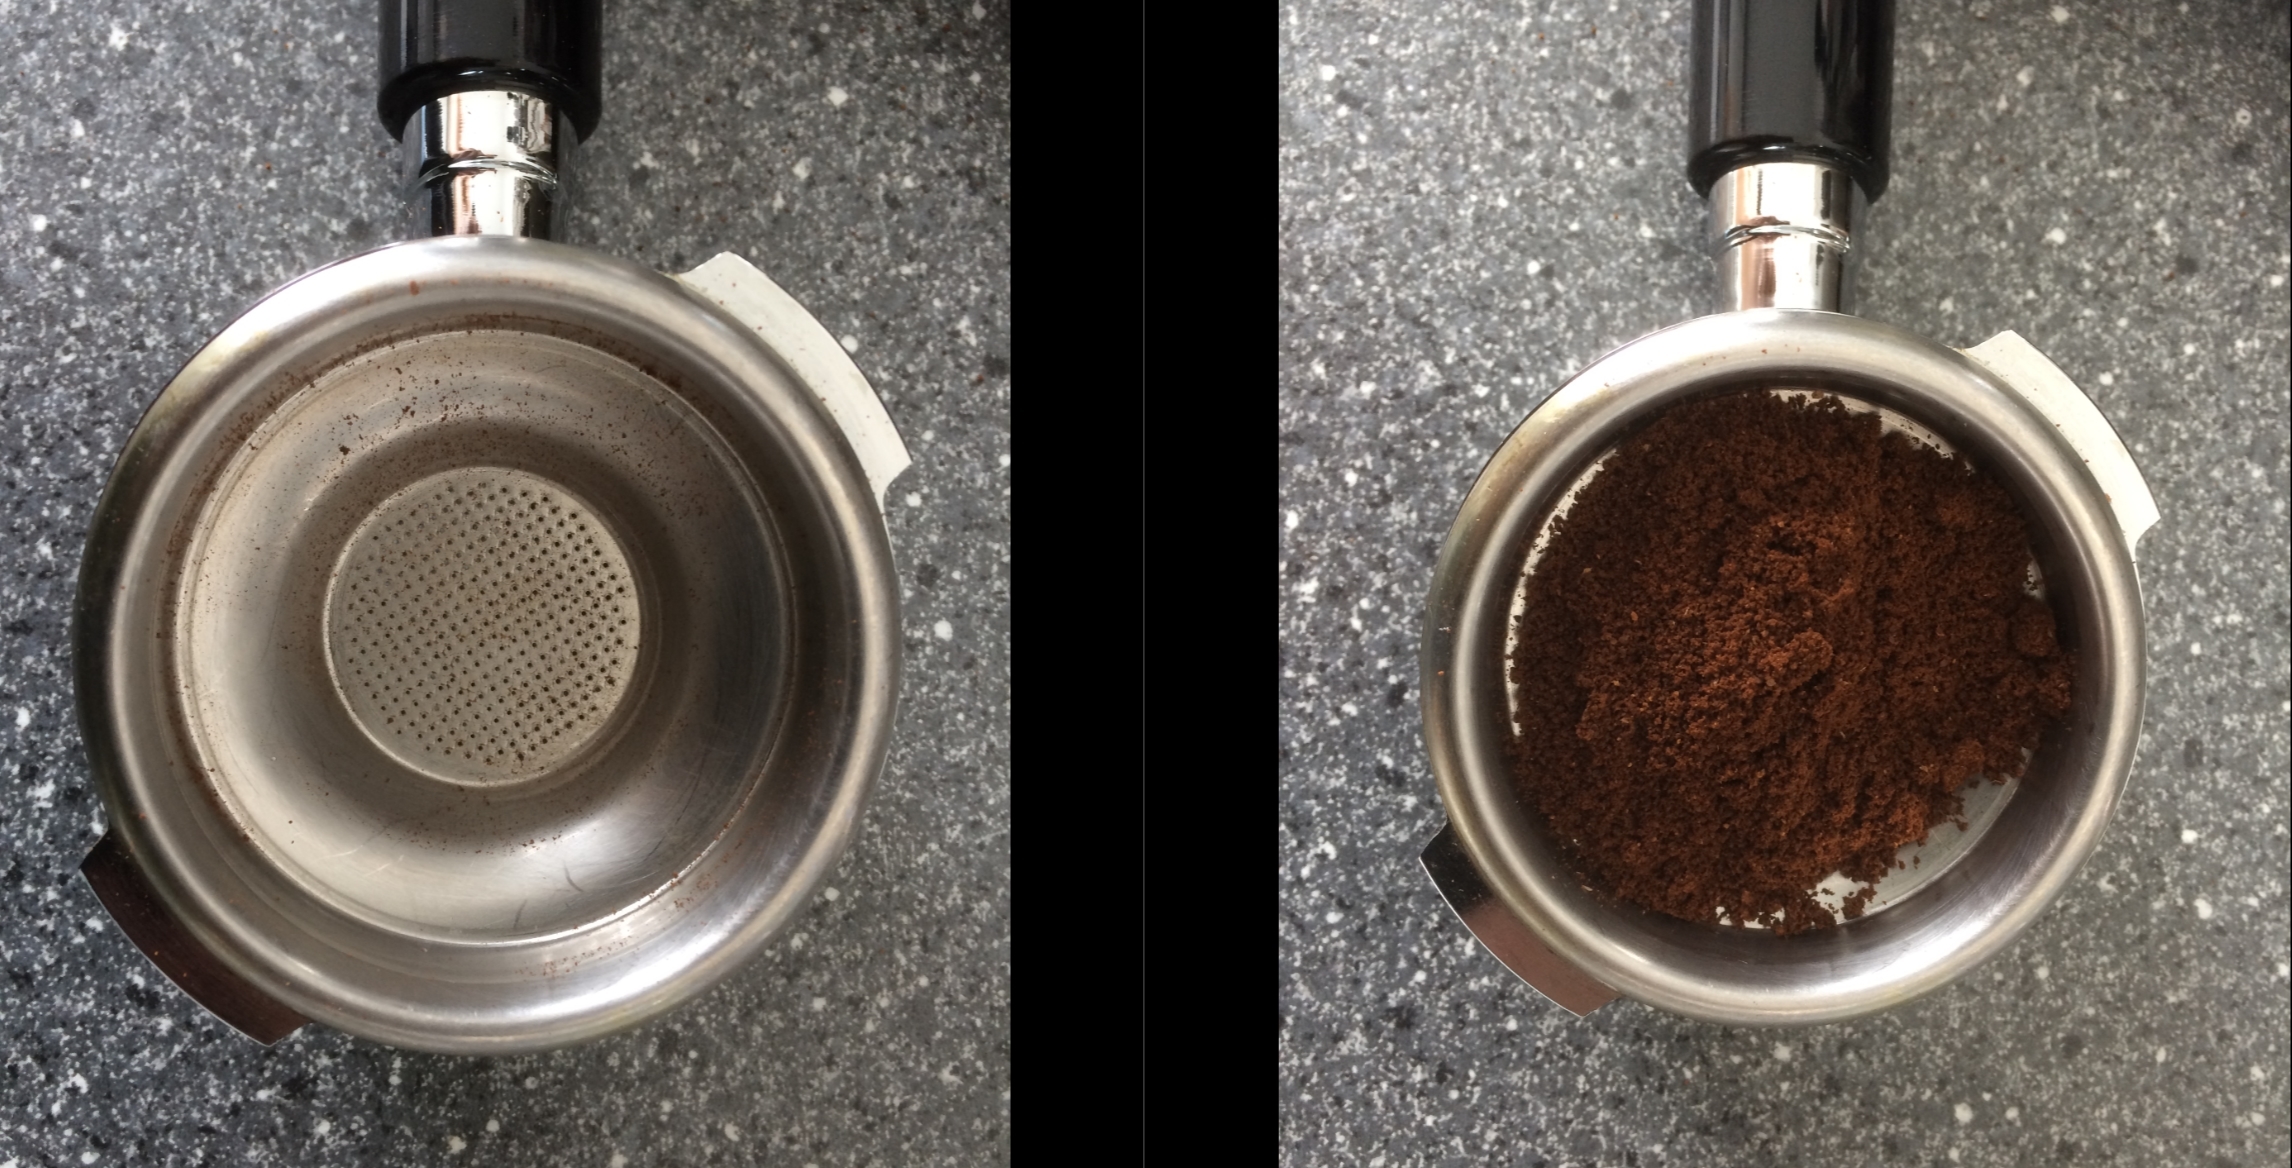 Wieviel Gramm Kaffee auf eine Tasse Espresso?